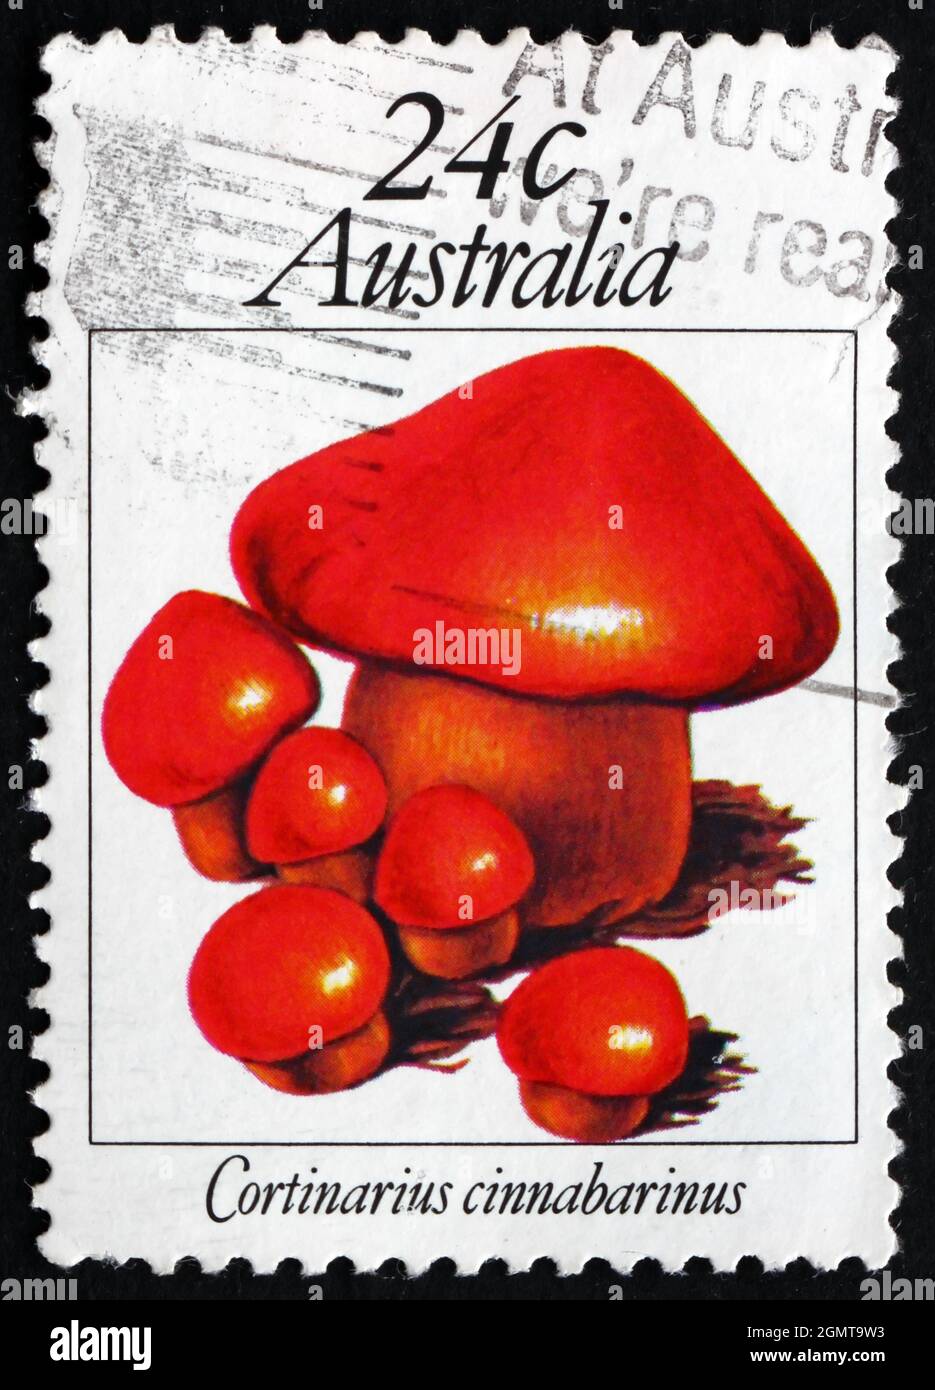 AUSTRALIEN - UM 1981: Eine in Australien gedruckte Briefmarke zeigt Cortinarius Cinnabarinus, Pilz, um 1981 Stockfoto